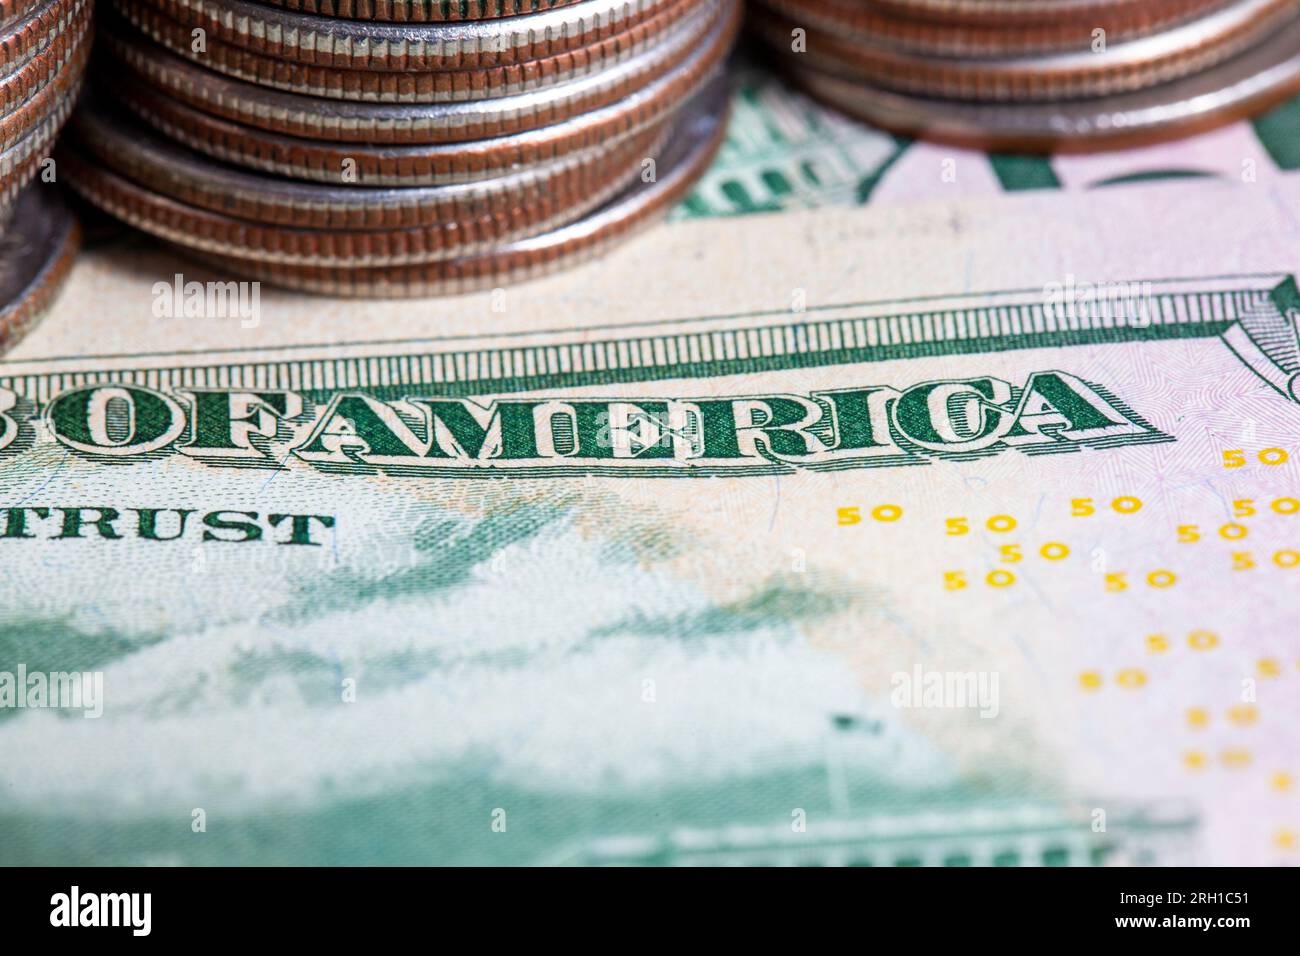 Monete americane un quarto di dollaro americano accatastato insieme, un mazzo di monete americane di 25 centesimi, vecchie monete sporche Foto Stock